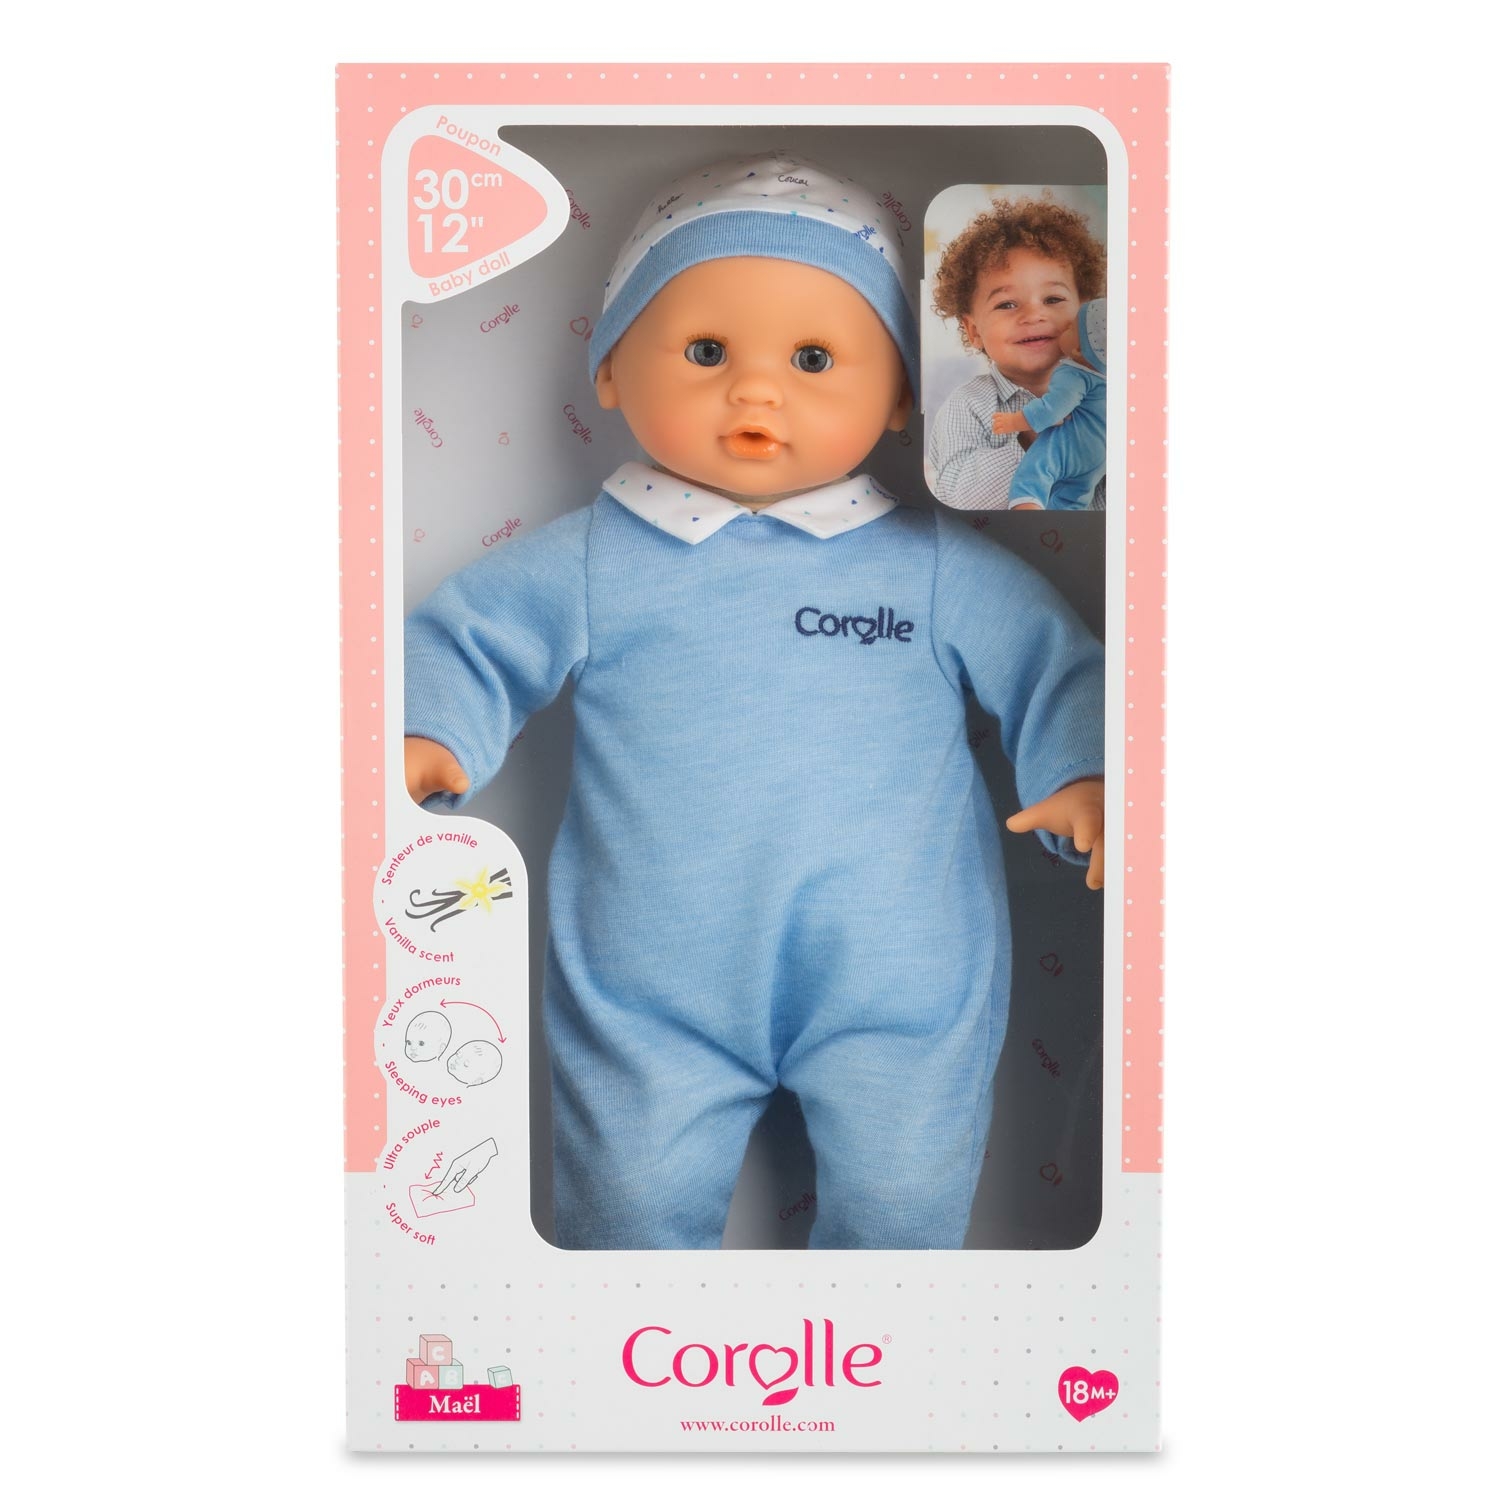 Corolle : retour sur la plus célèbre marque de poupées